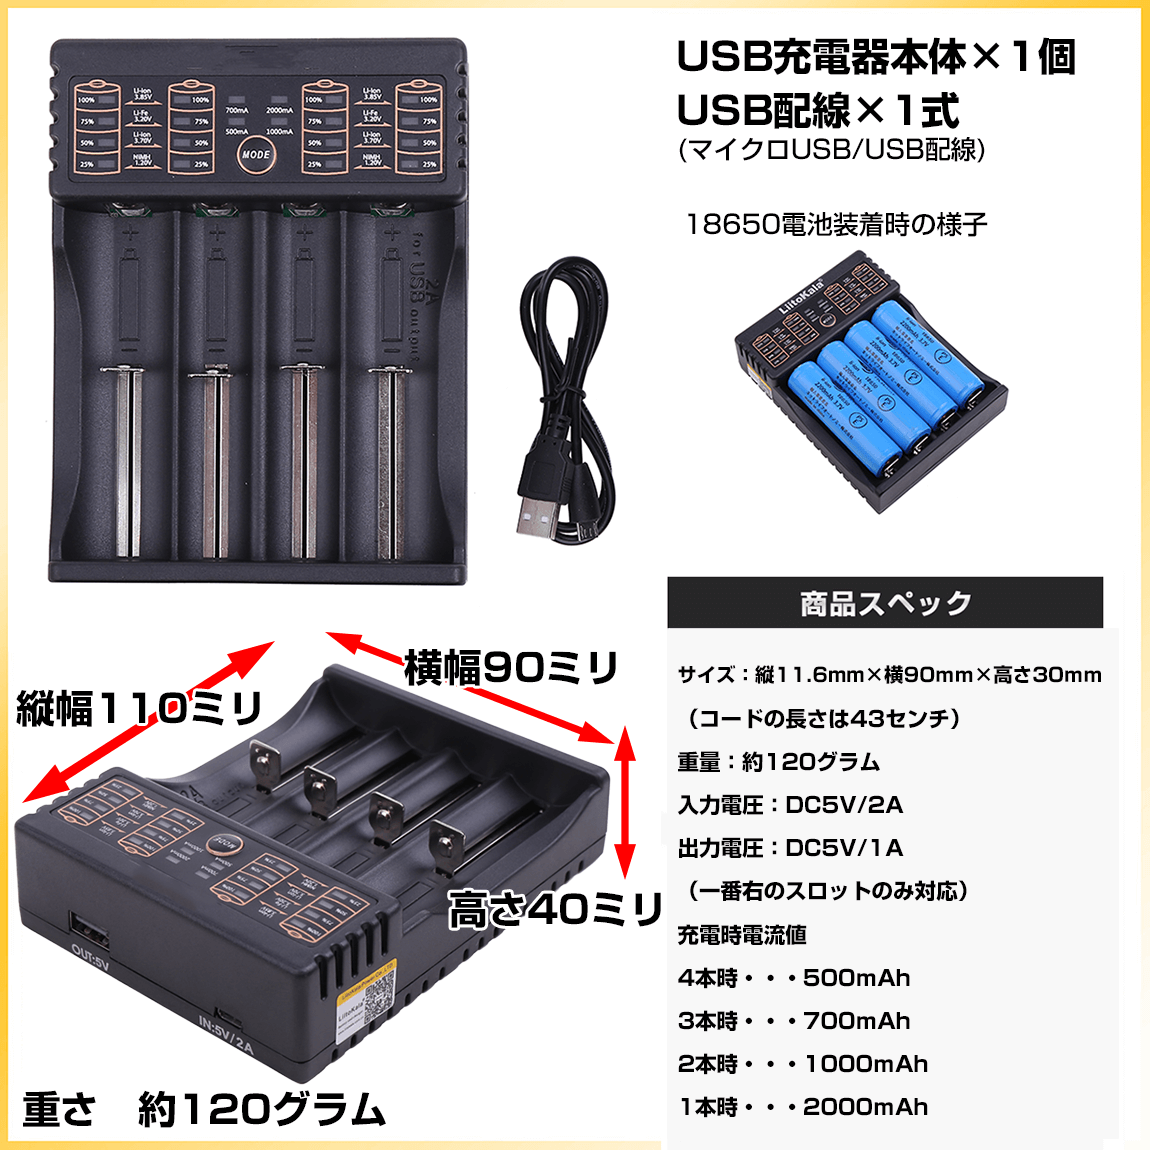 18650電池 急速充電器 USB仕様 5V出力搭載 リセット機能搭載 : 6z-zgm4 